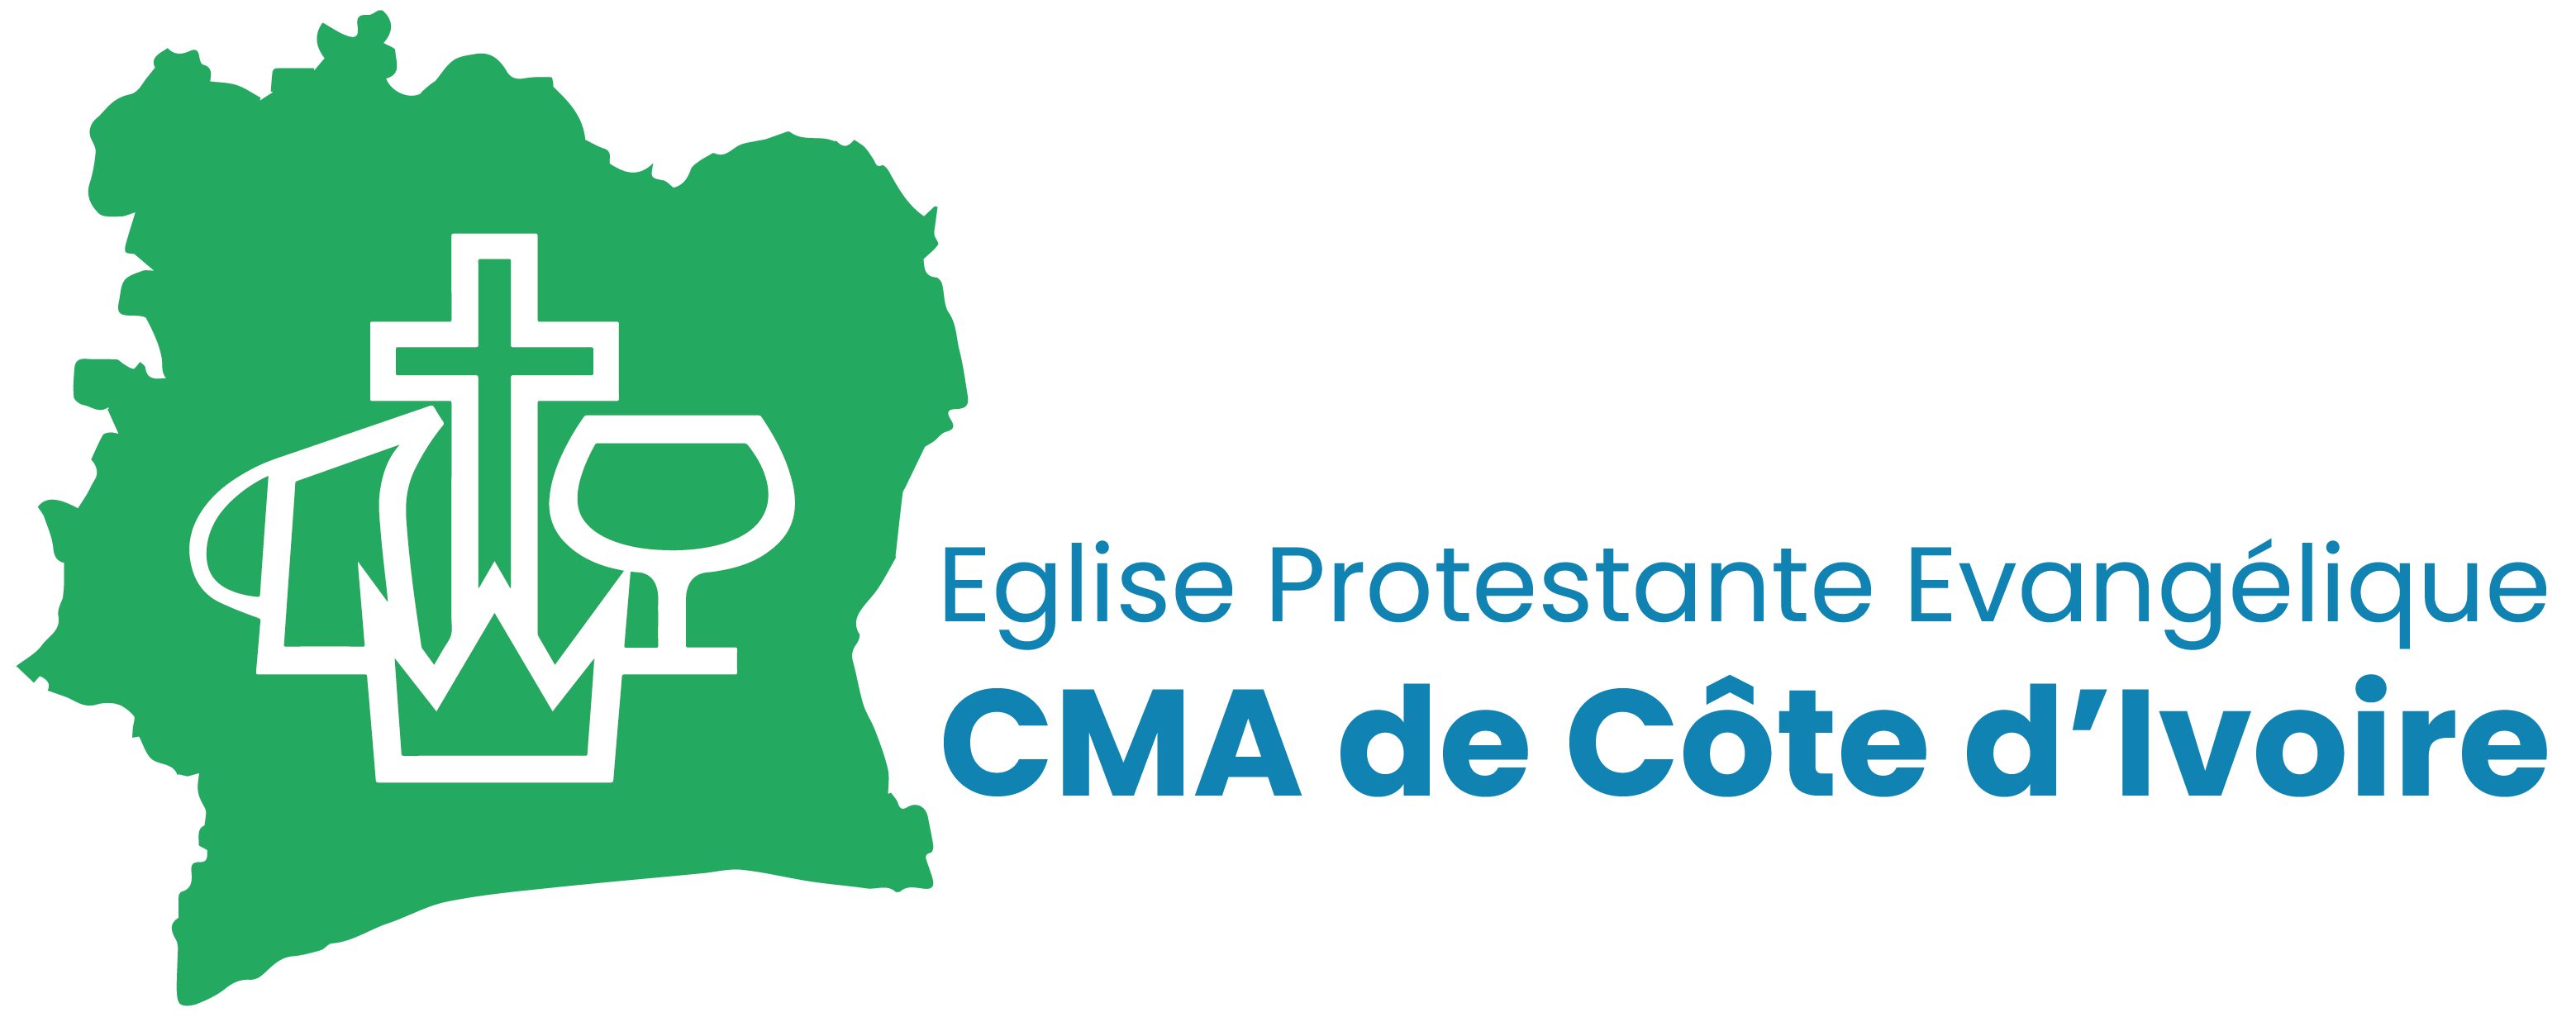 Eglise Protestante Evangelique CMA de Côte d'Ivoire